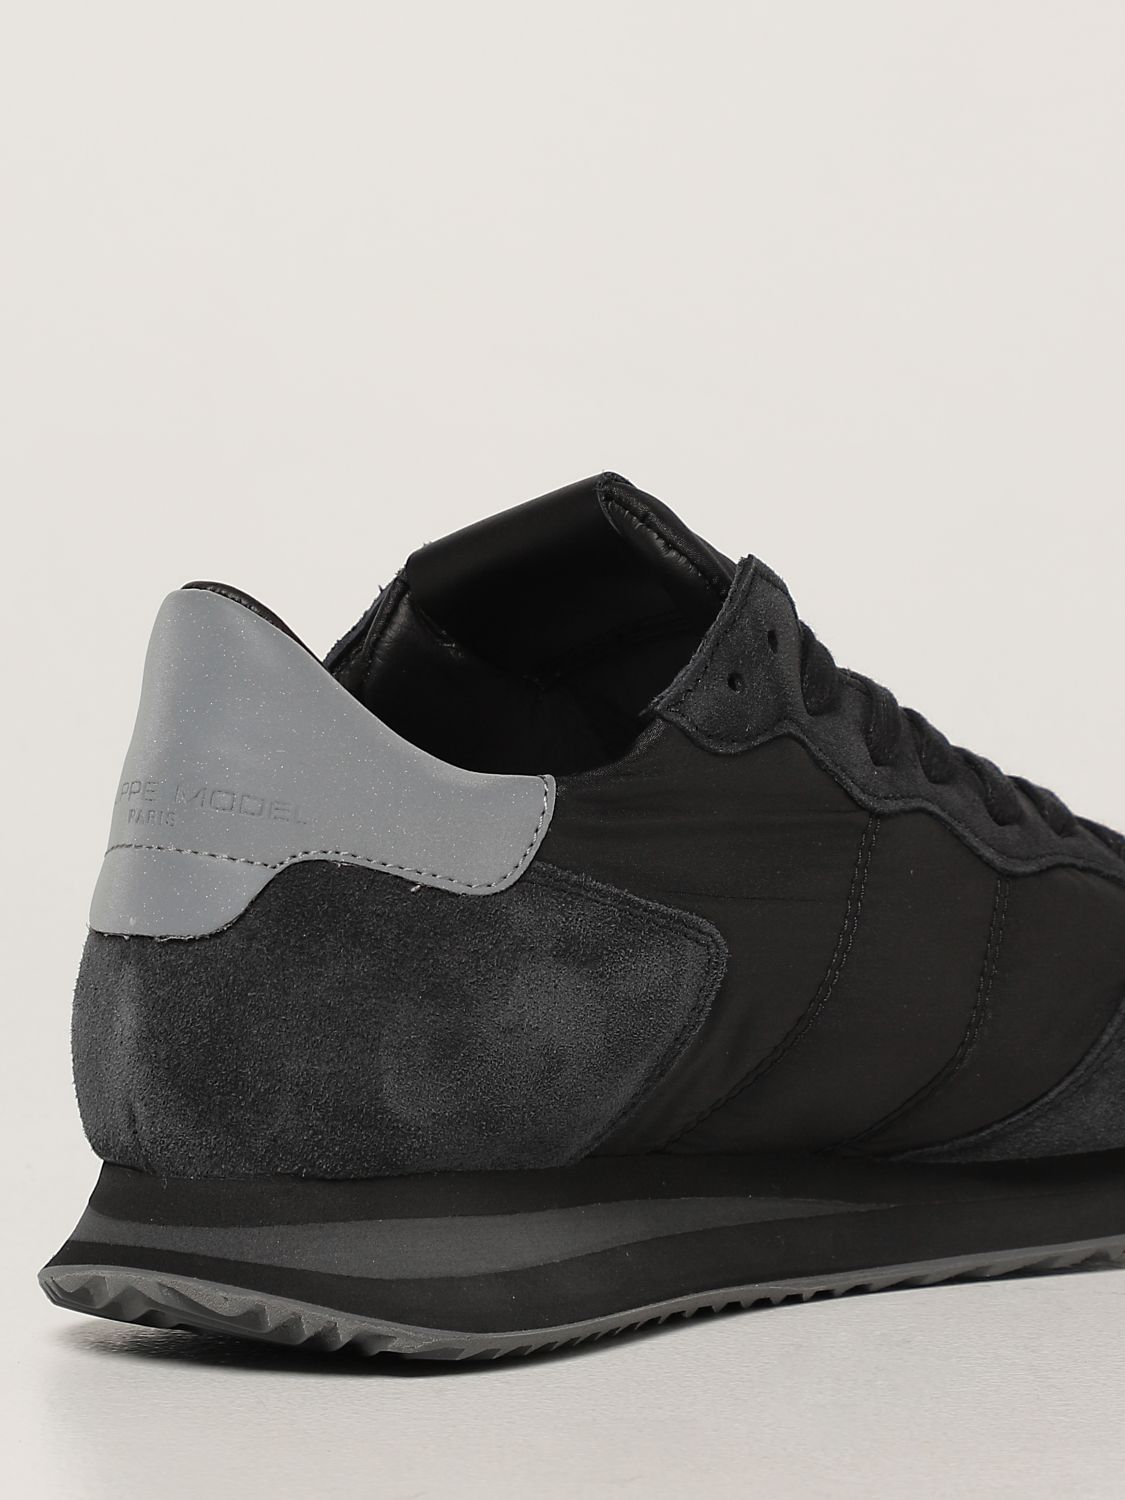 Sneakers Philippe Model: Sneakers Trpx Philippe Model in nylon e camoscio nero 3